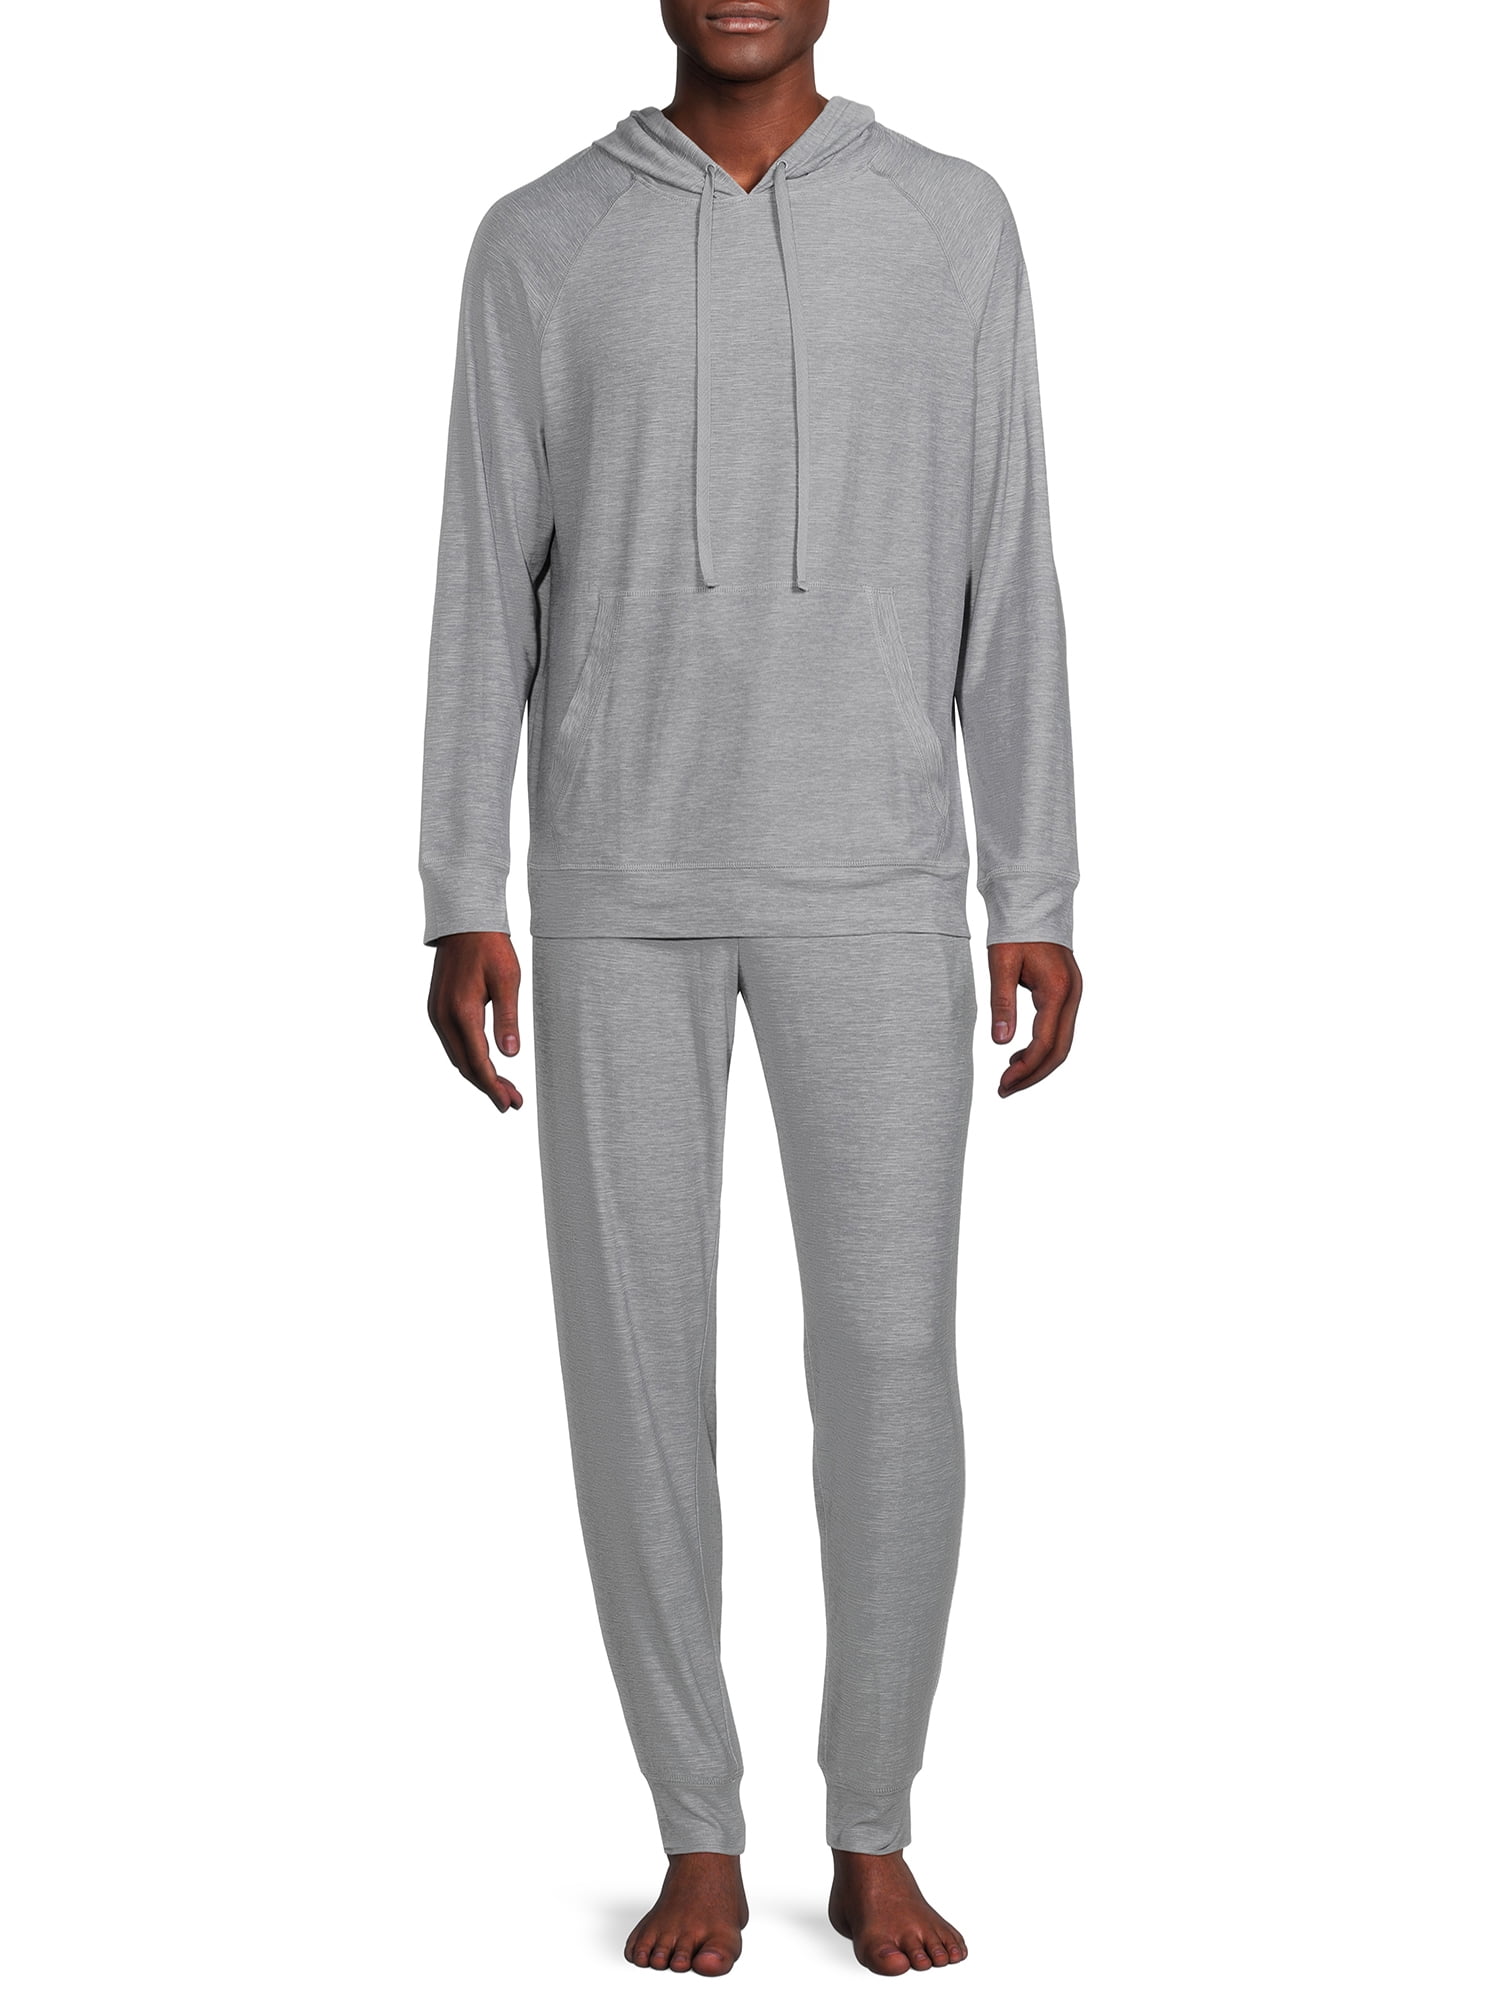 Ande Men’s Raglan Hoodie and Jogger Pajamas Sleepwear Set, Sizes S-2XL ...